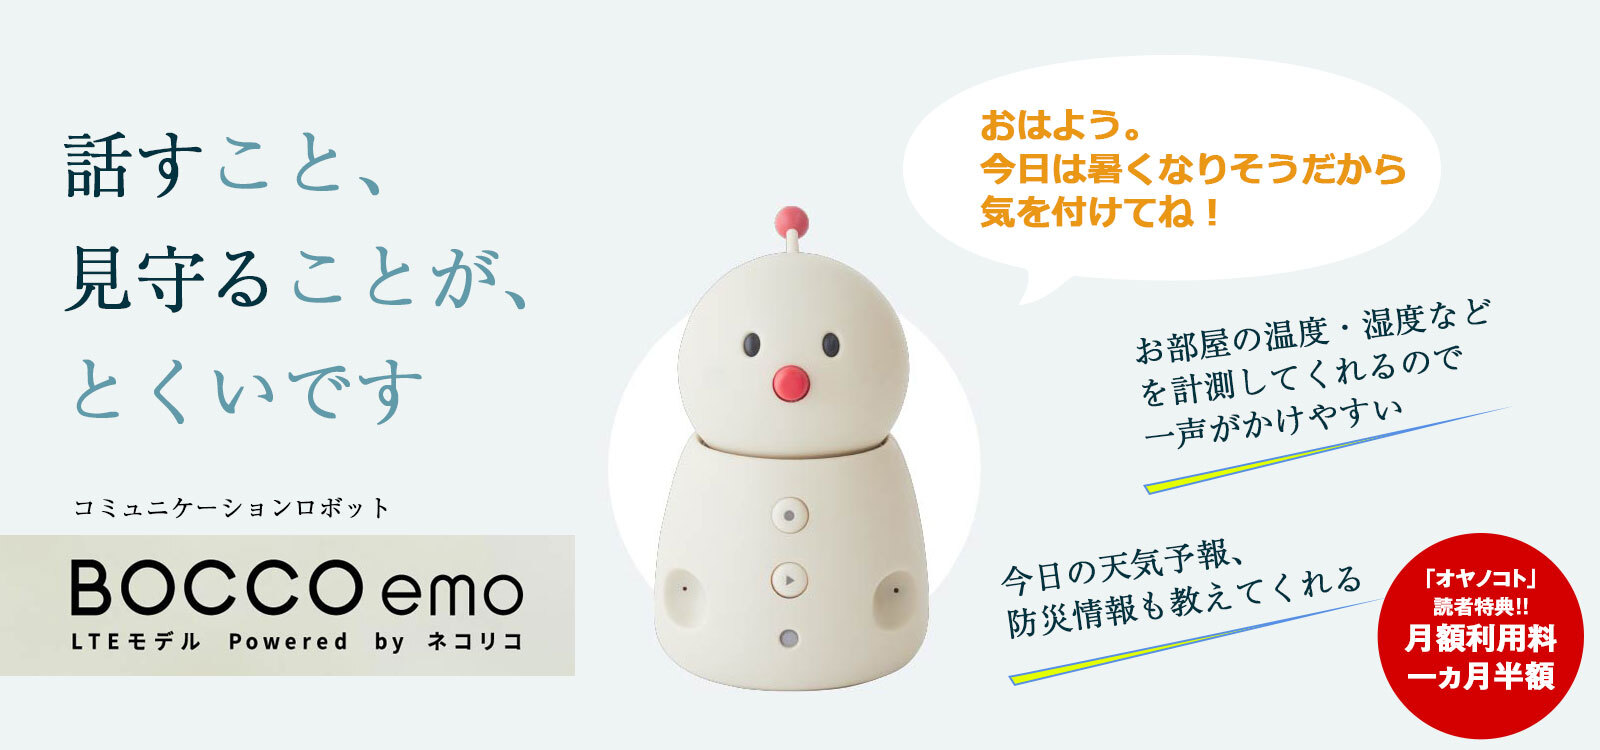 コミュニケーションロボット「BOCCO emo(エモ) LTEモデル」 Powered by